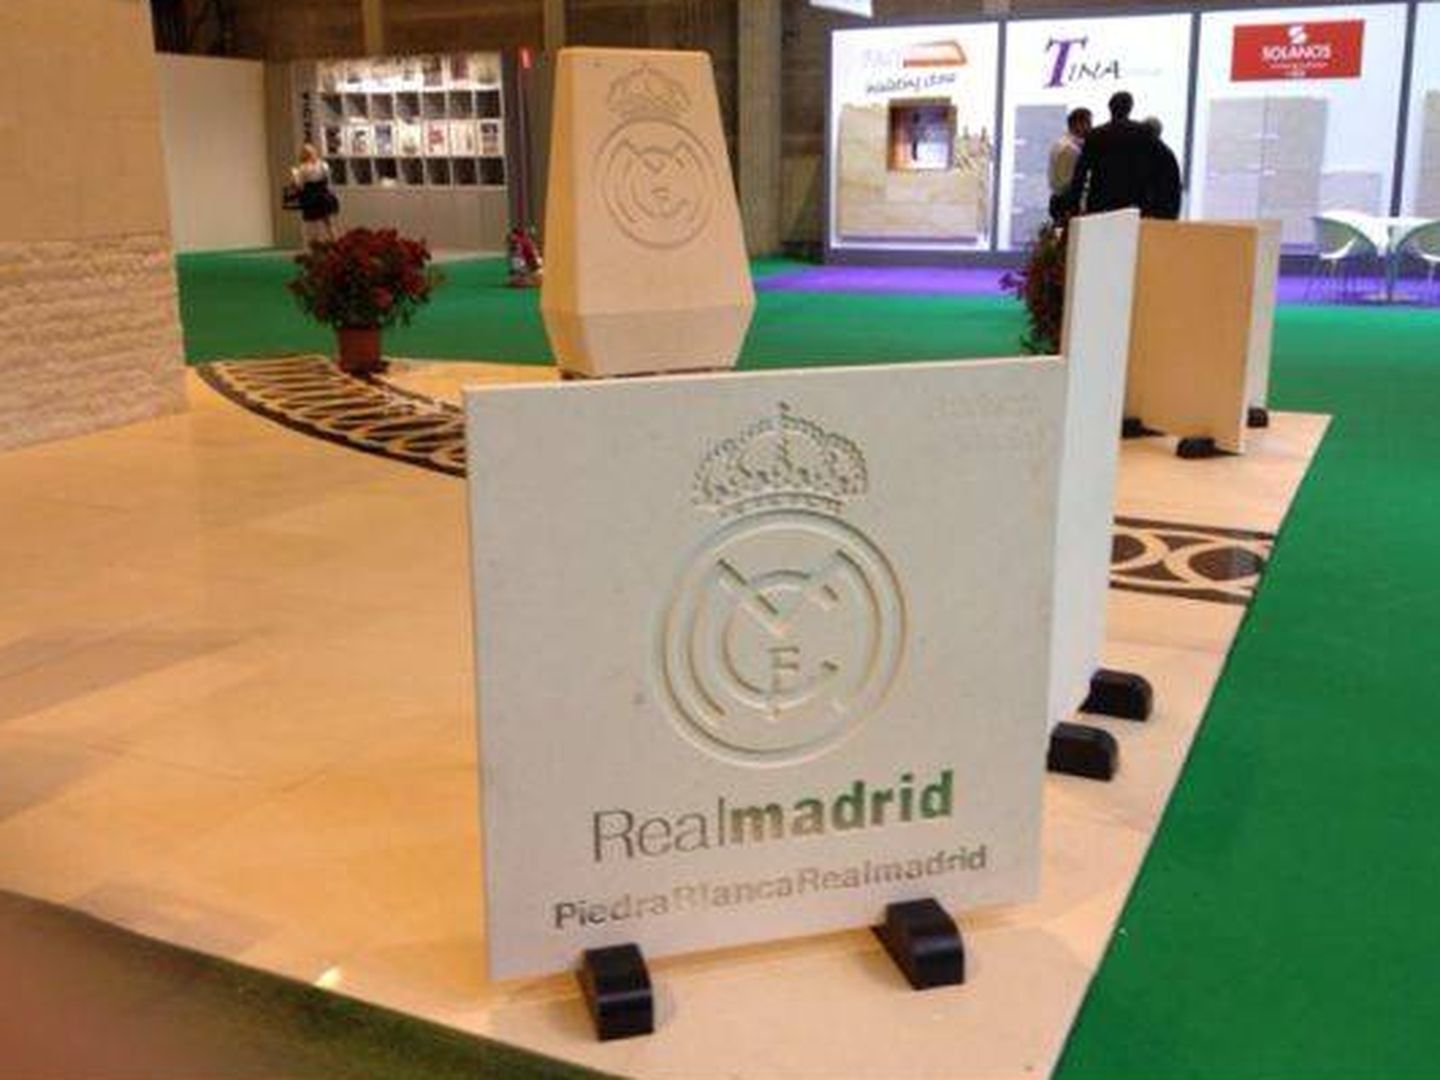 Piedra Blanca Real Madrid en una exposición en Ifema. (EC)